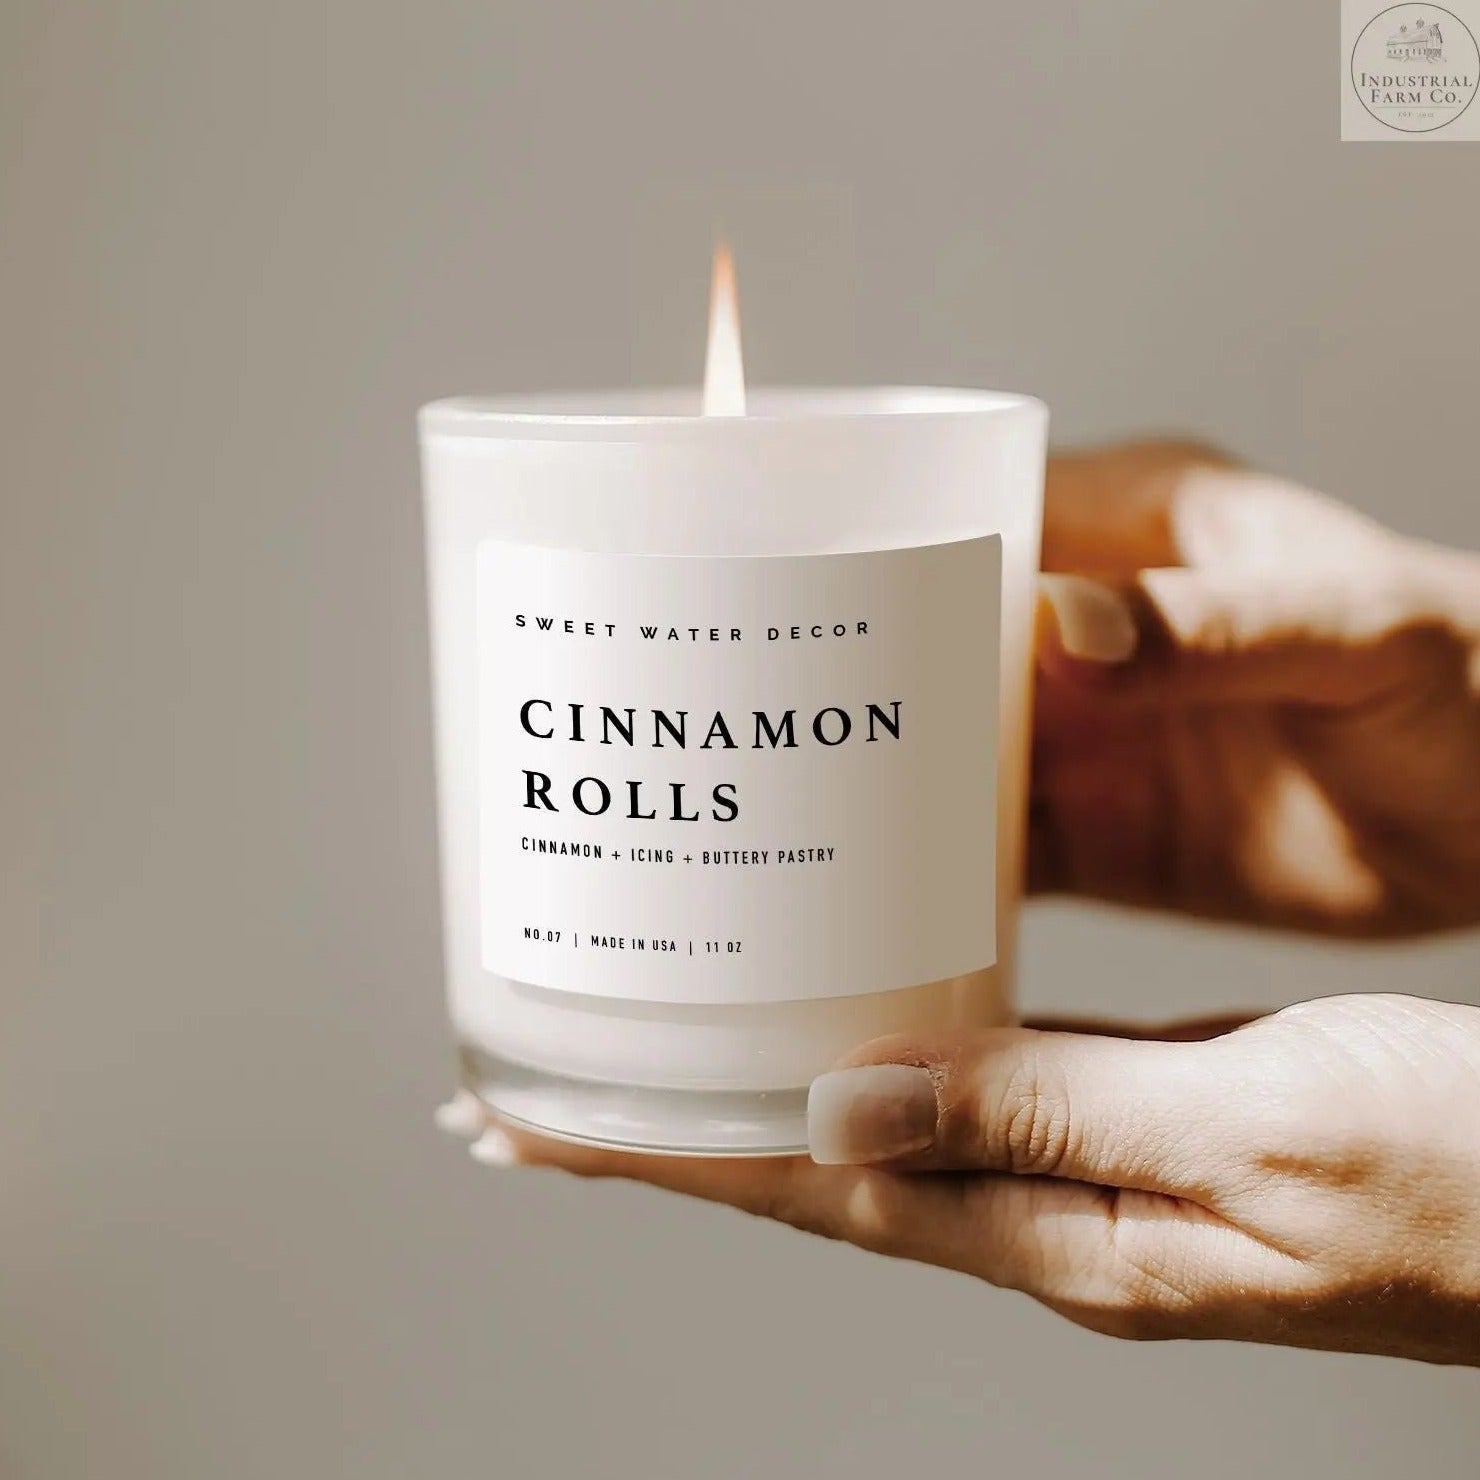 Cinnamon Rolls Soy Candle | Industrial Farm Co